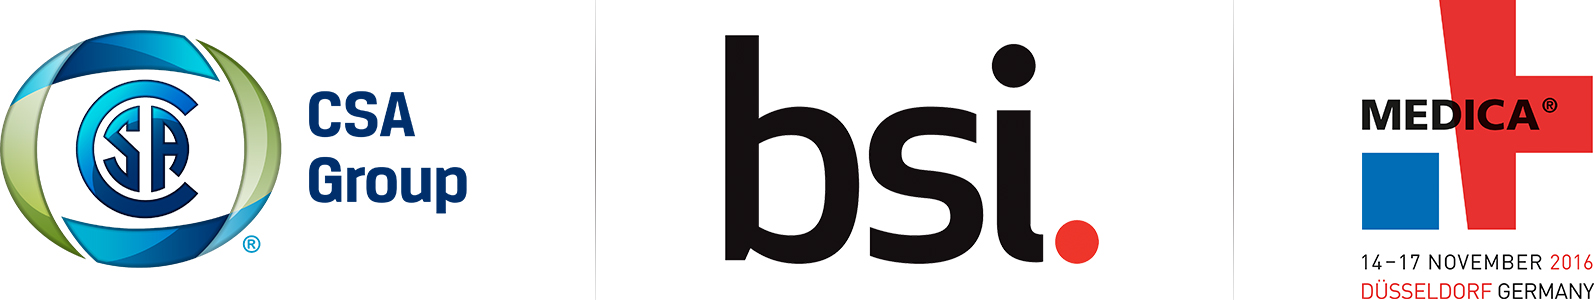 CSA_BSI_Dual_Logo_incl._Medica_Note